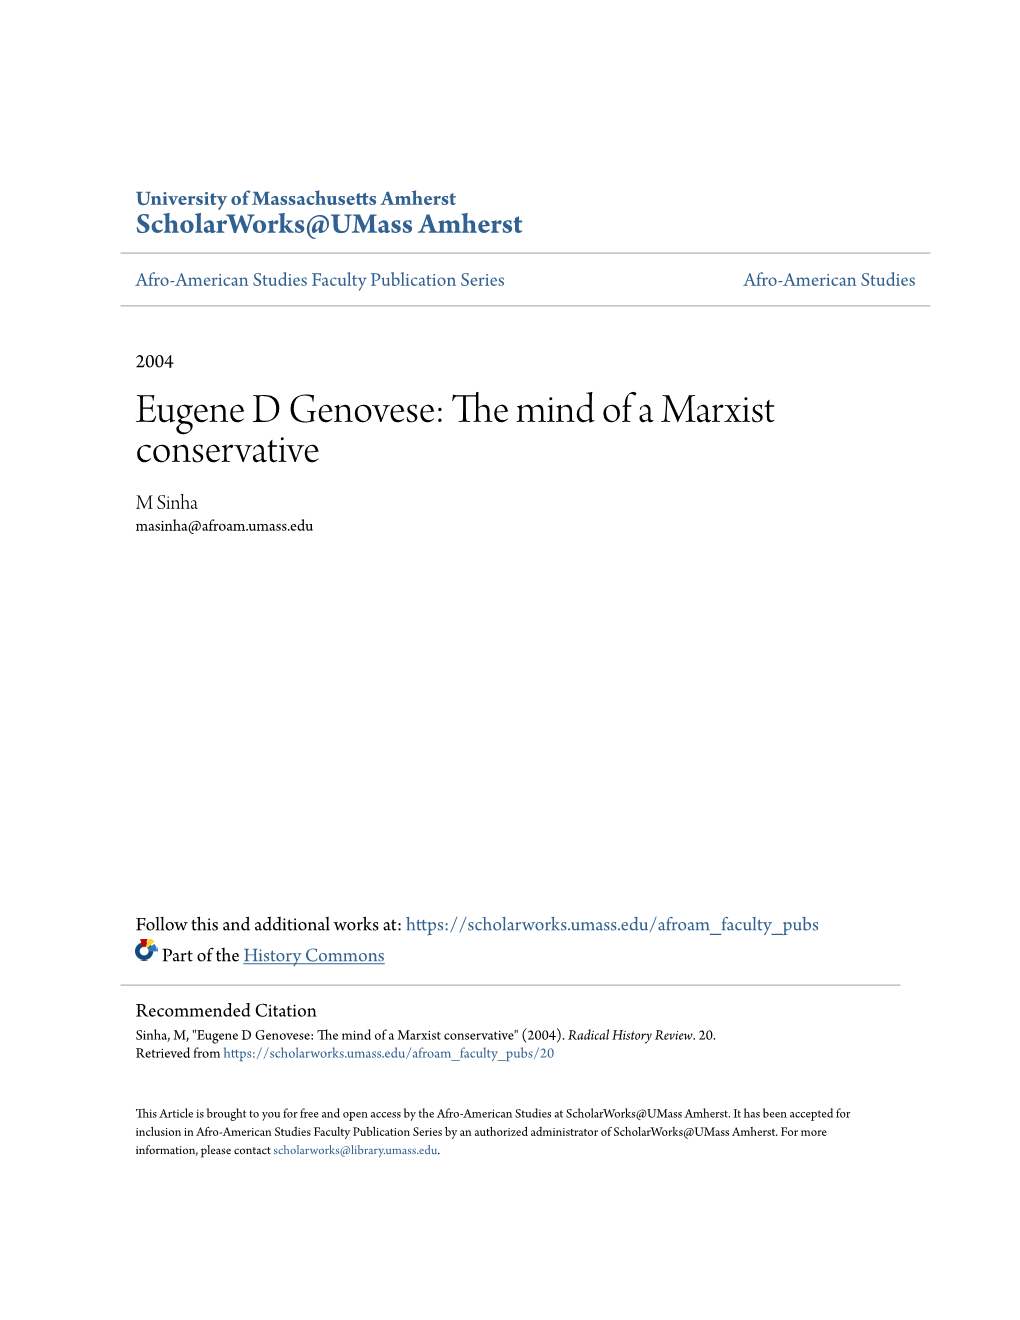 Eugene D Genovese: the Mind of a Am Rxist Conservative M Sinha Masinha@Afroam.Umass.Edu